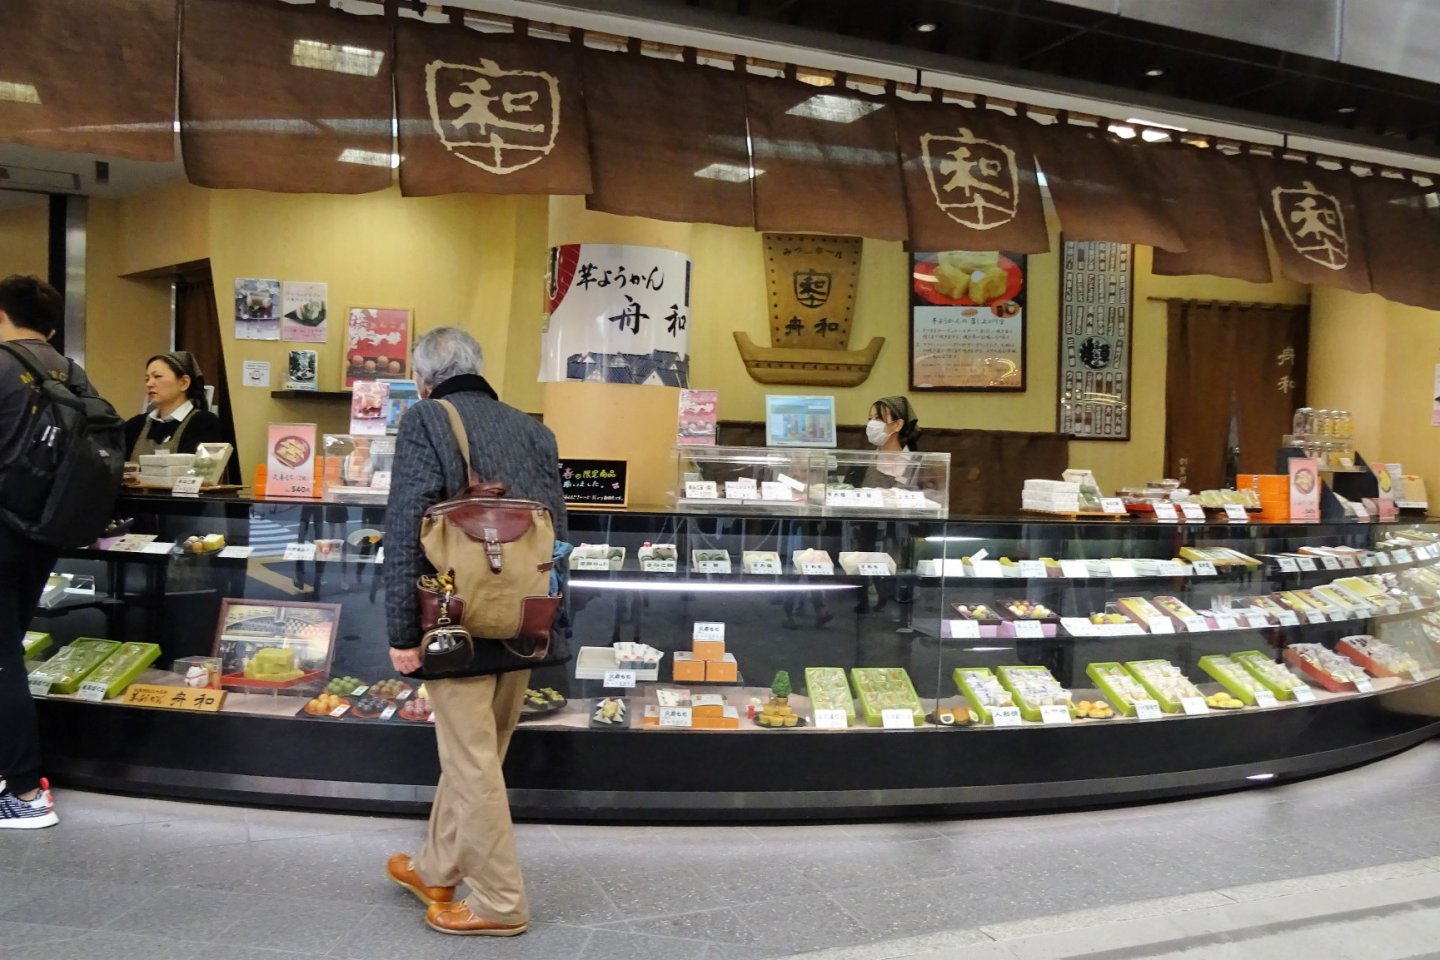 ร้านฟุนะวะ (Funawa) ร้านขายขนมหวานแบบญี่ปุ่นแท้